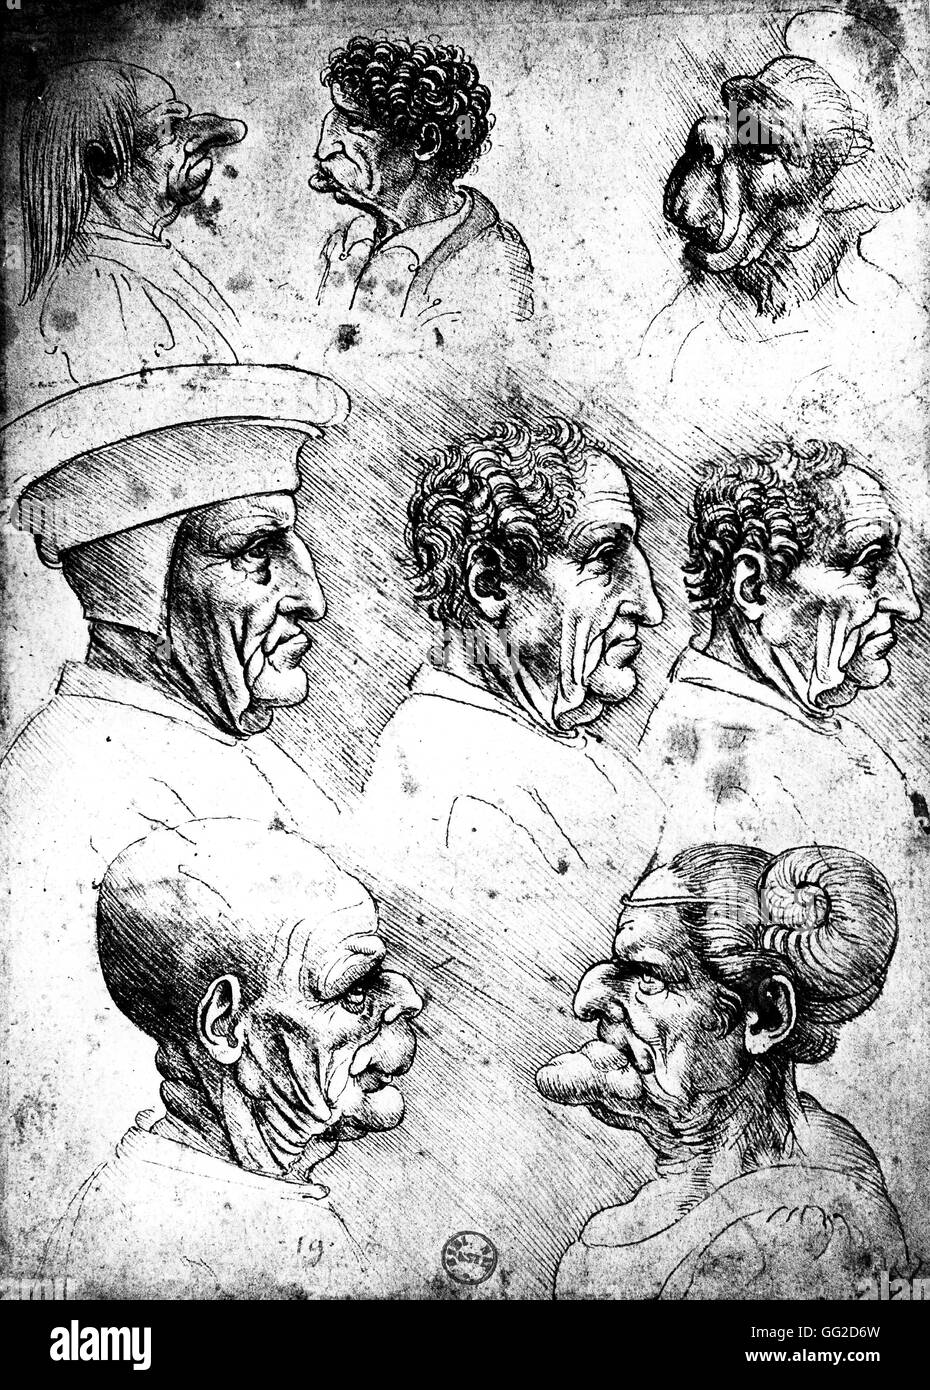 Leonardo da Vinci l'école italienne têtes grotesques 1502 Dessin à la craie publié dans 'Sketchs et études de têtes grotesques". Le dessin original est situé à la Bibliothèque Royale au château de Windsor. Oxford, Bodleian Library Banque D'Images